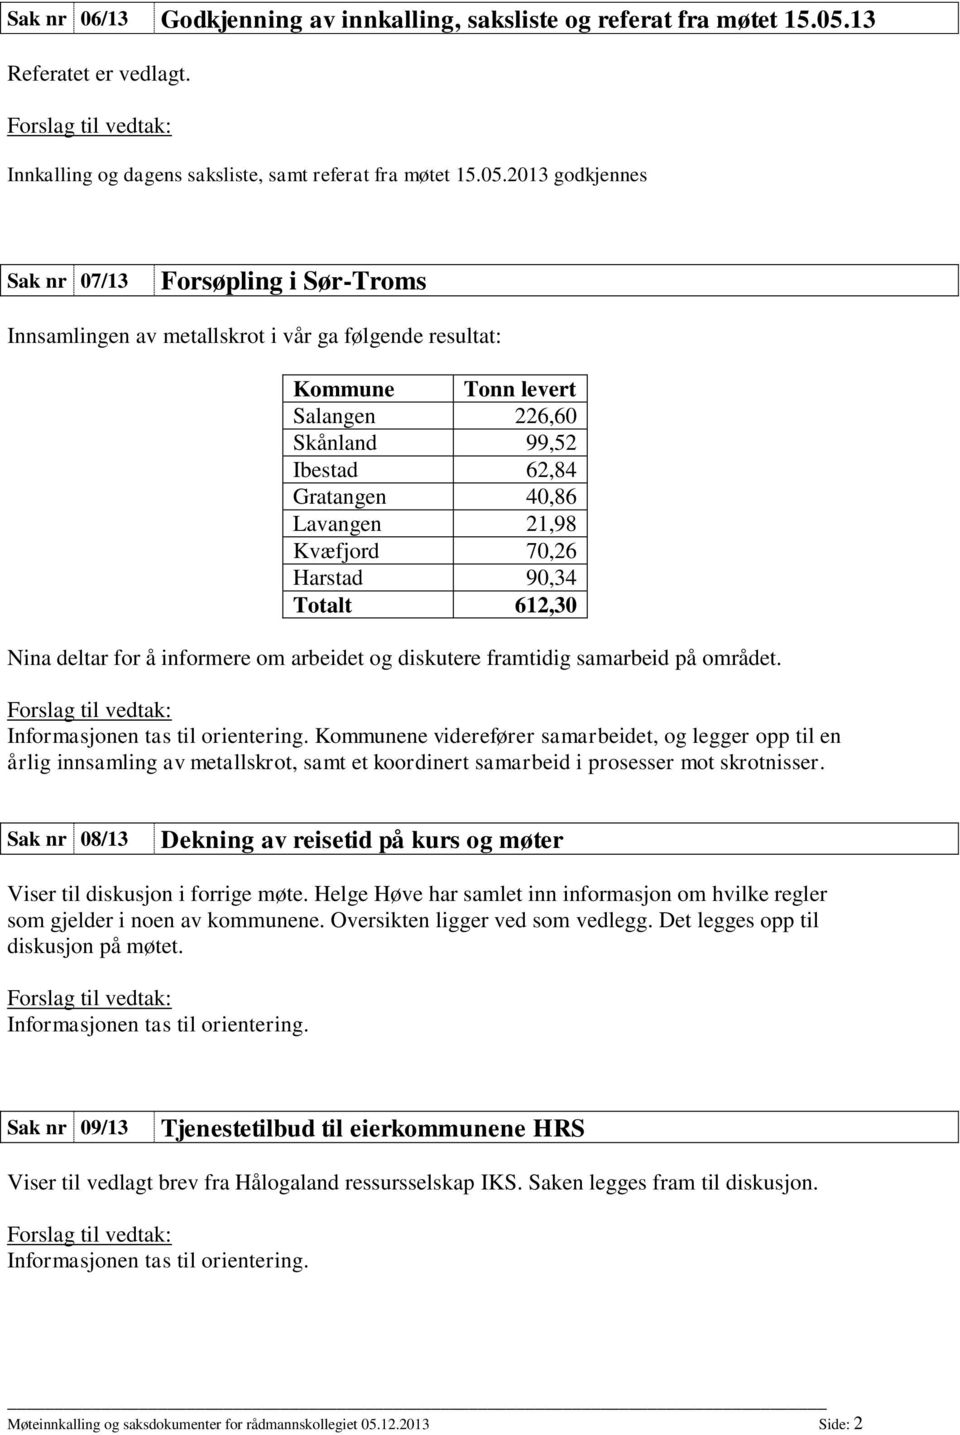 2013 godkjennes Sak nr 07/13 Forsøpling i Sør-Troms Innsamlingen av metallskrot i vår ga følgende resultat: Kommune Tonn levert Salangen 226,60 Skånland 99,52 Ibestad 62,84 Gratangen 40,86 Lavangen